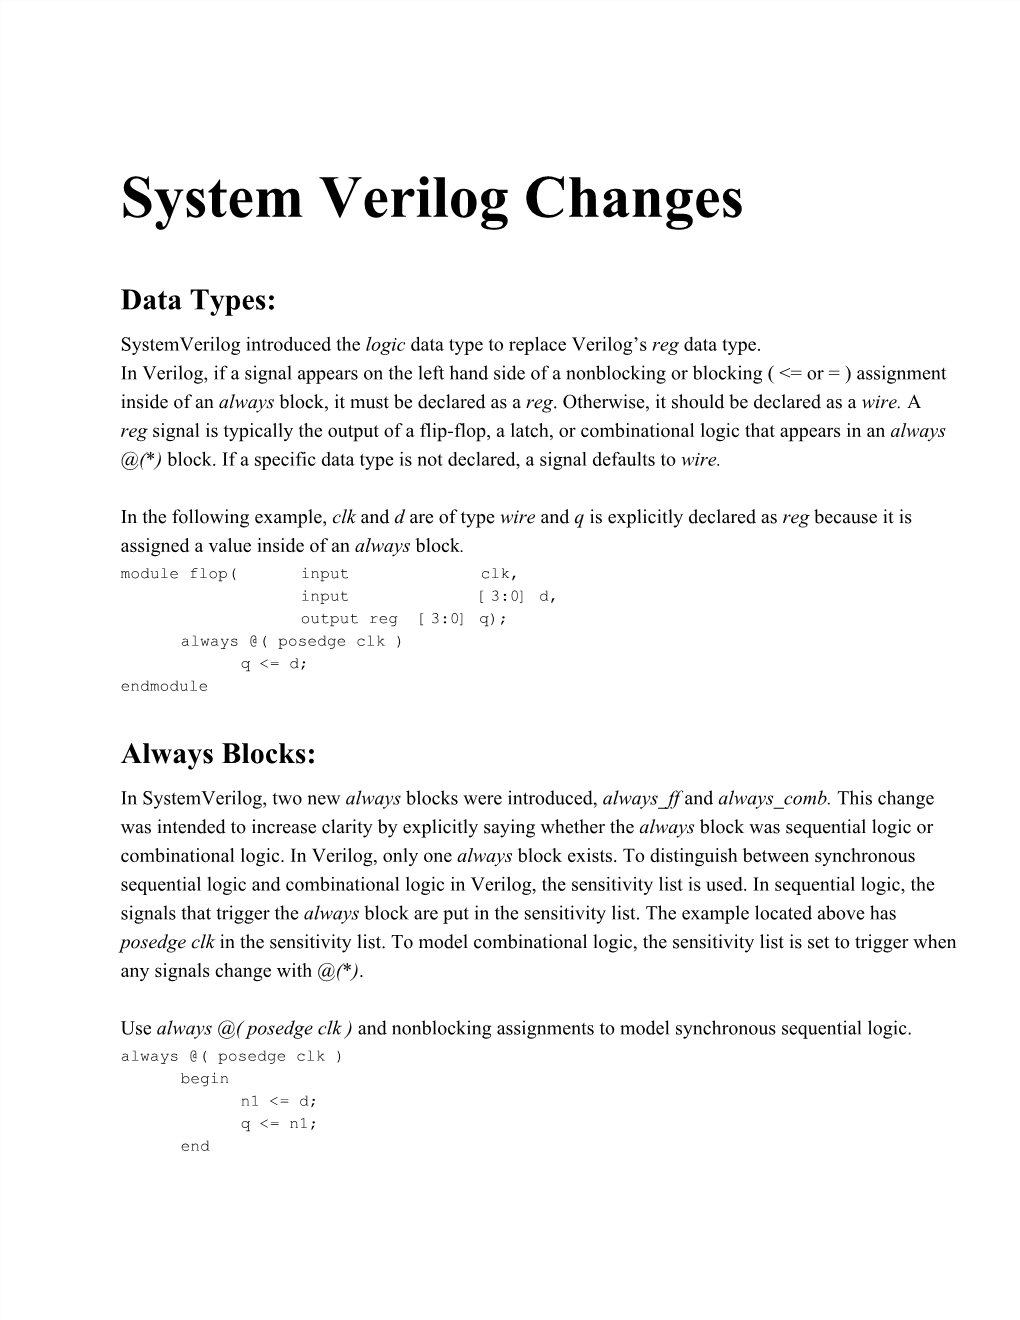 System Verilog Changes